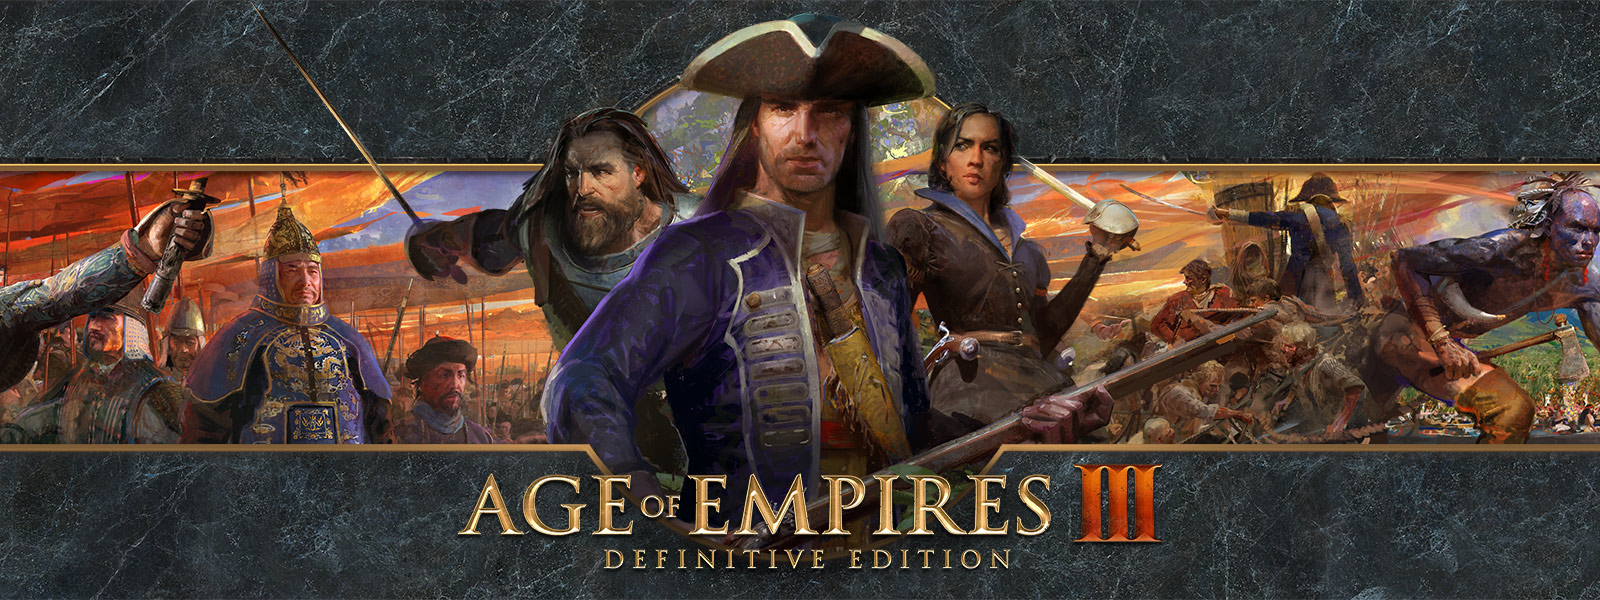 Age of Empires III: Definitive Edition-Logo vor einem Hintergrund mit Kriegsführern und ihren Armeen